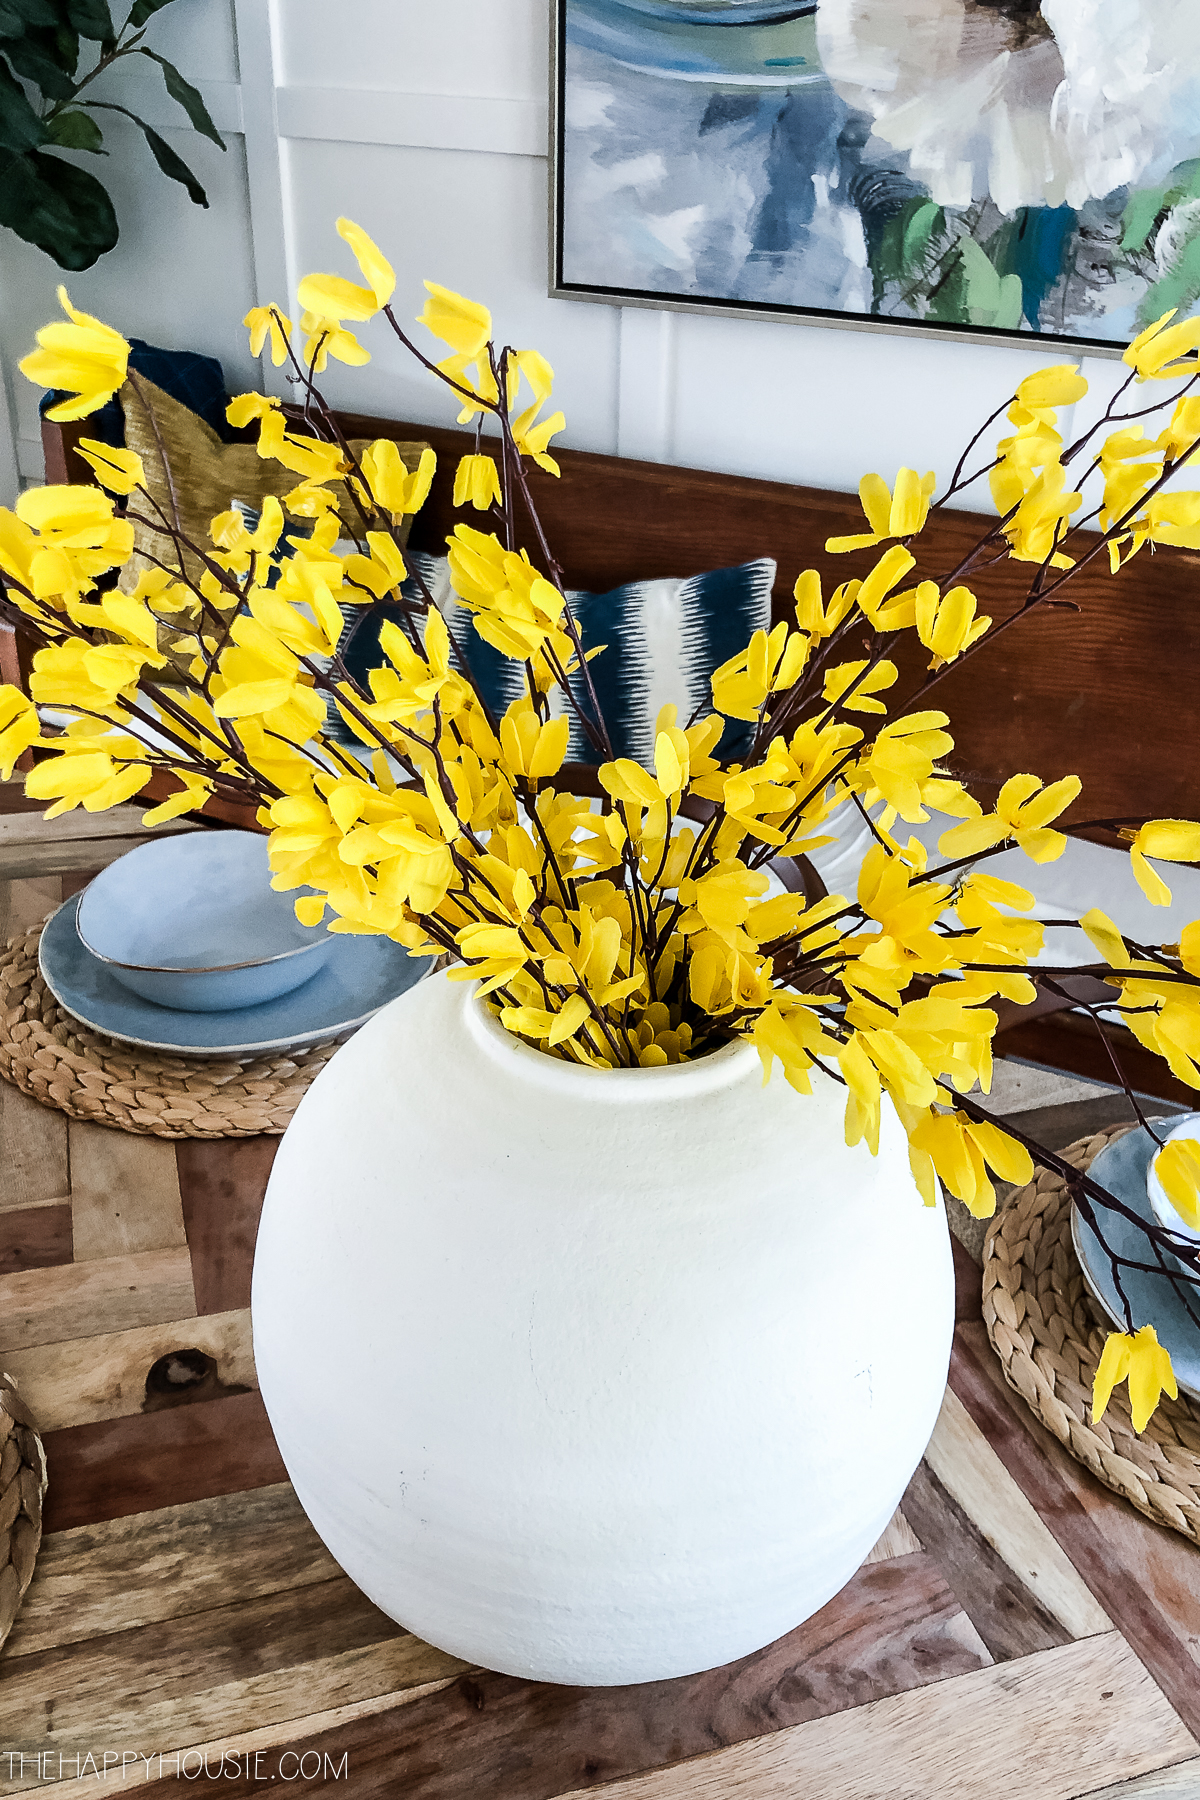 Yellow forsythia blooms in the white vase.